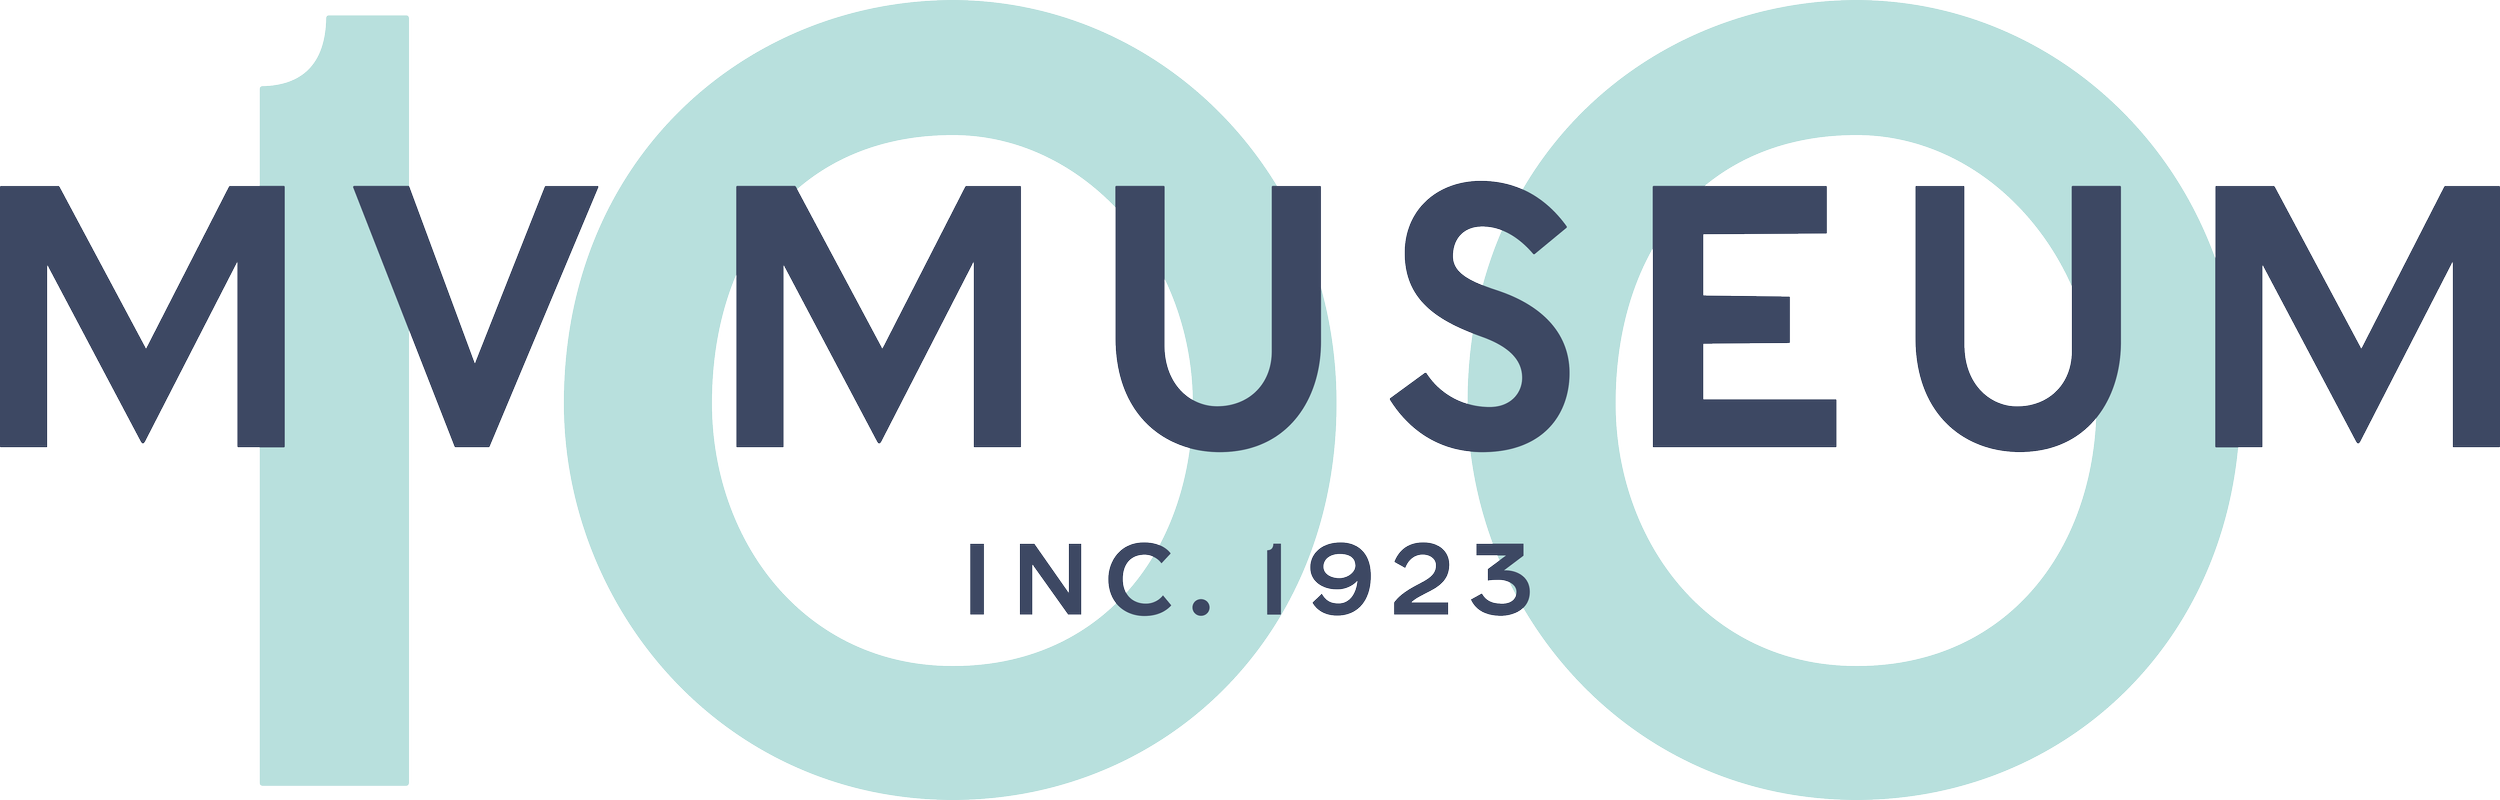 MVM Centennial Logo.png